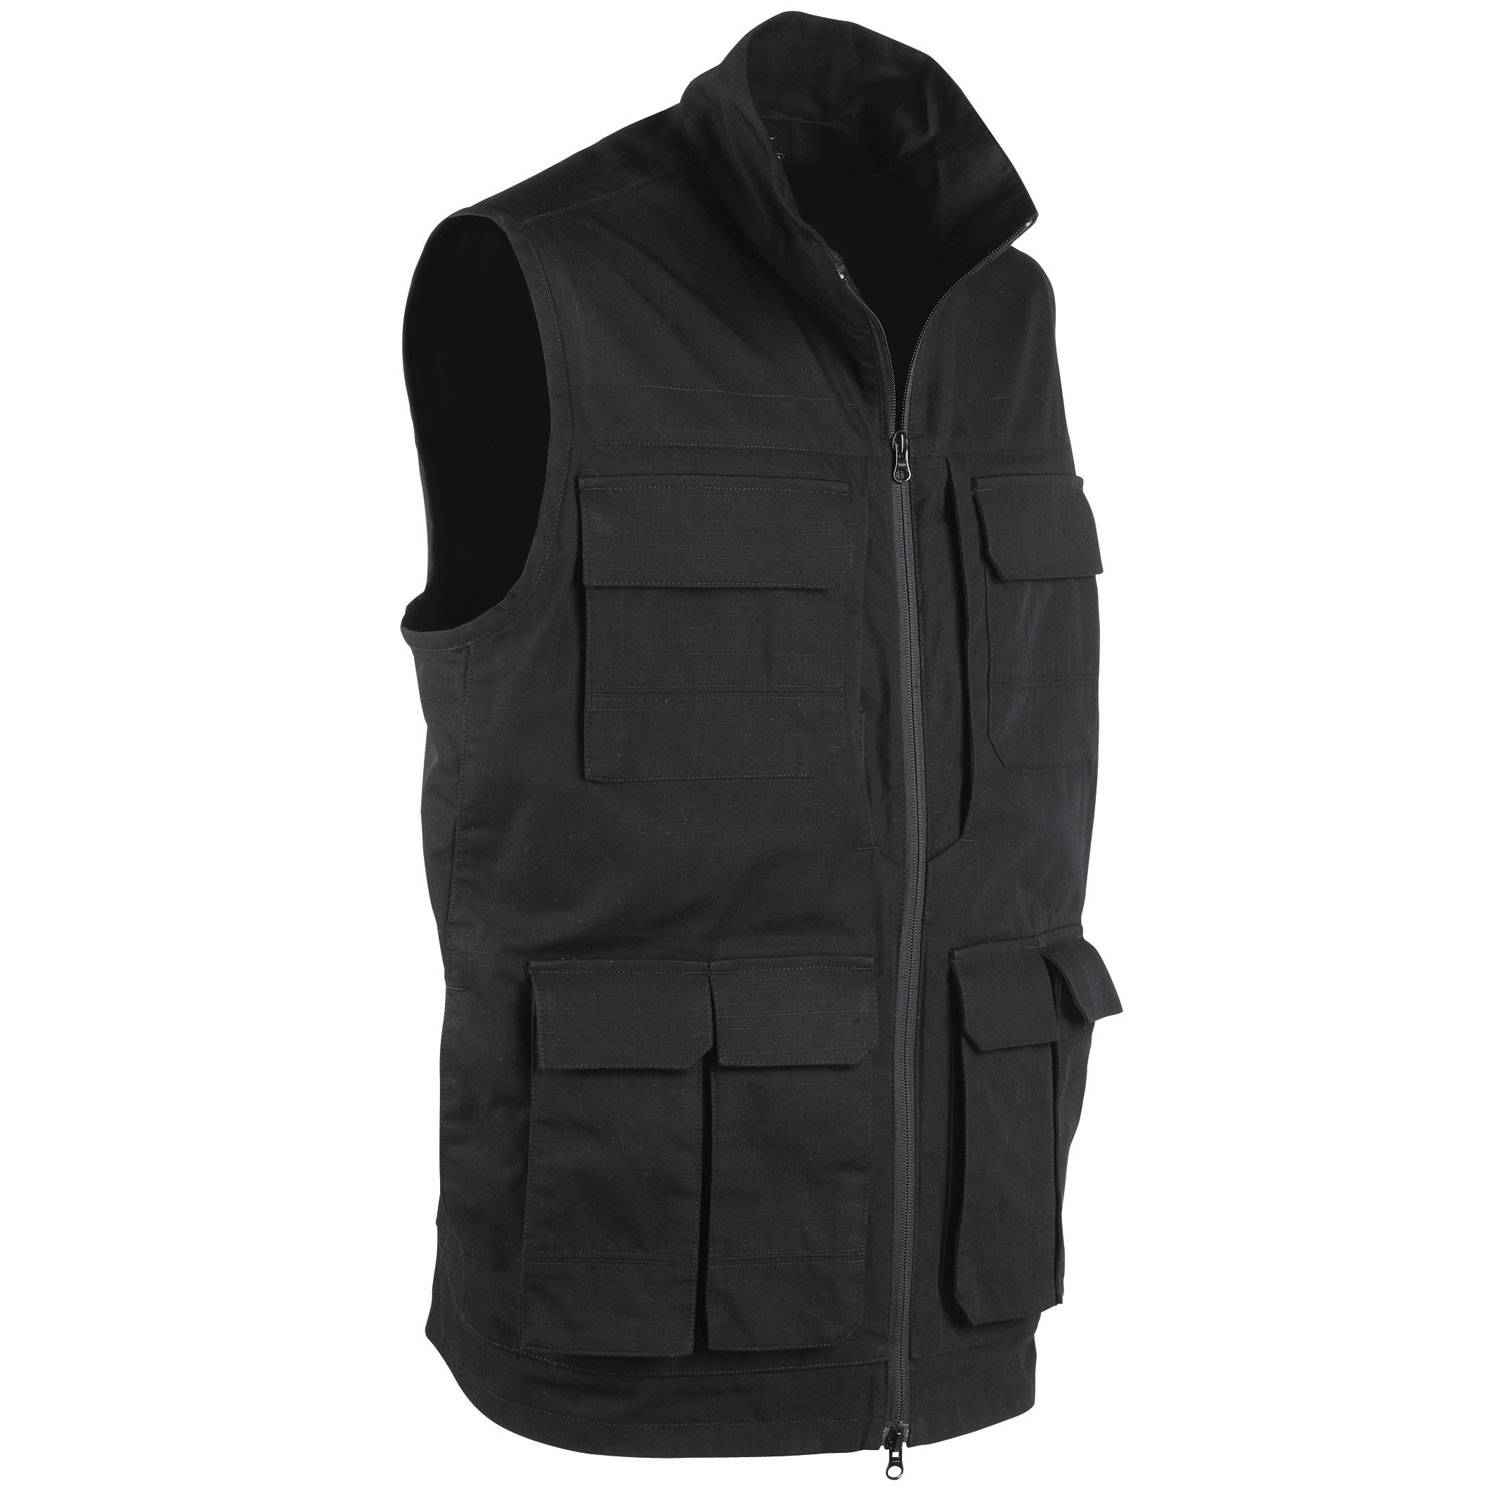 5.11 Tactical Range Vest